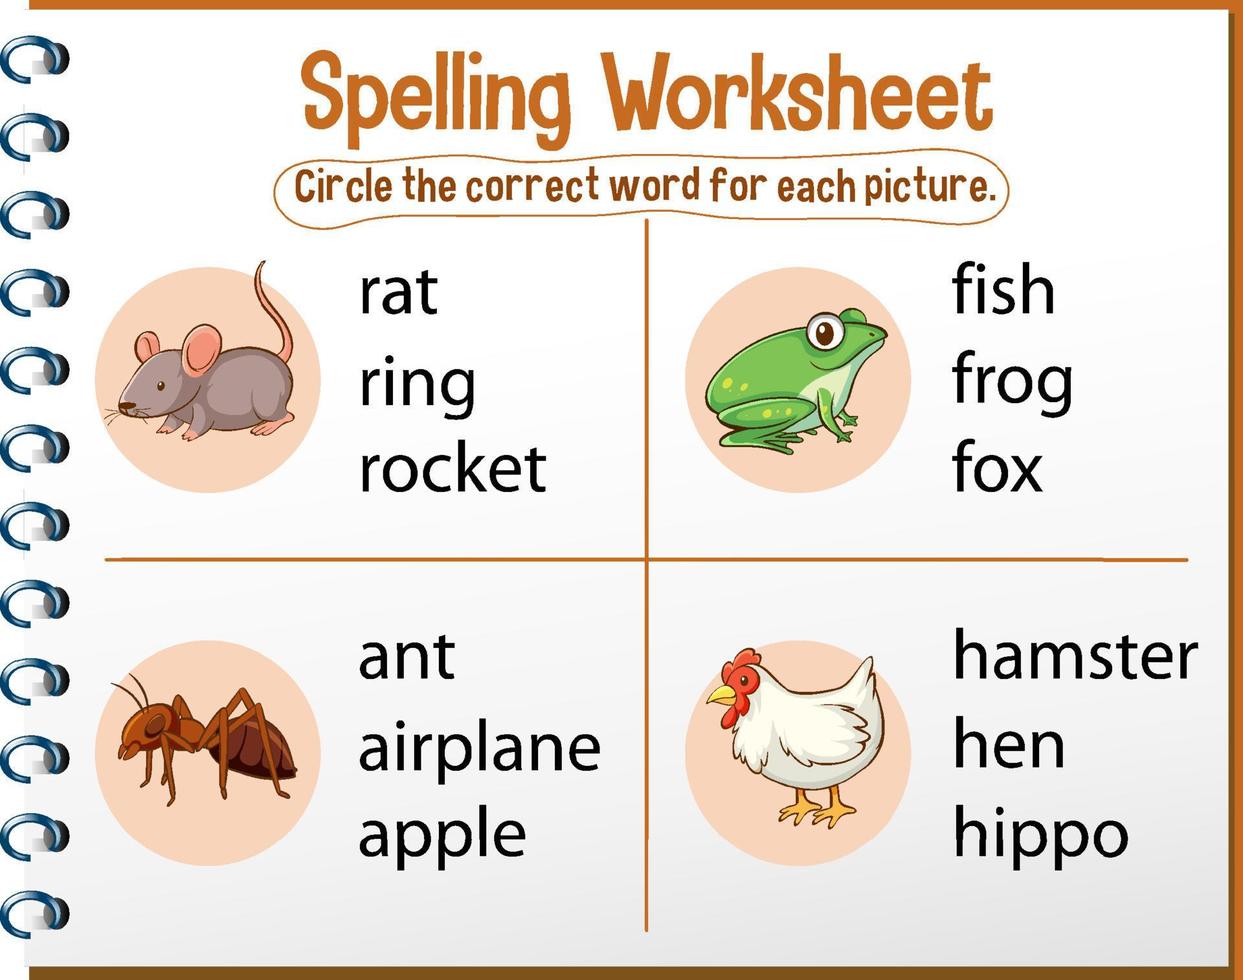 Spelling worksheet template for kids vector